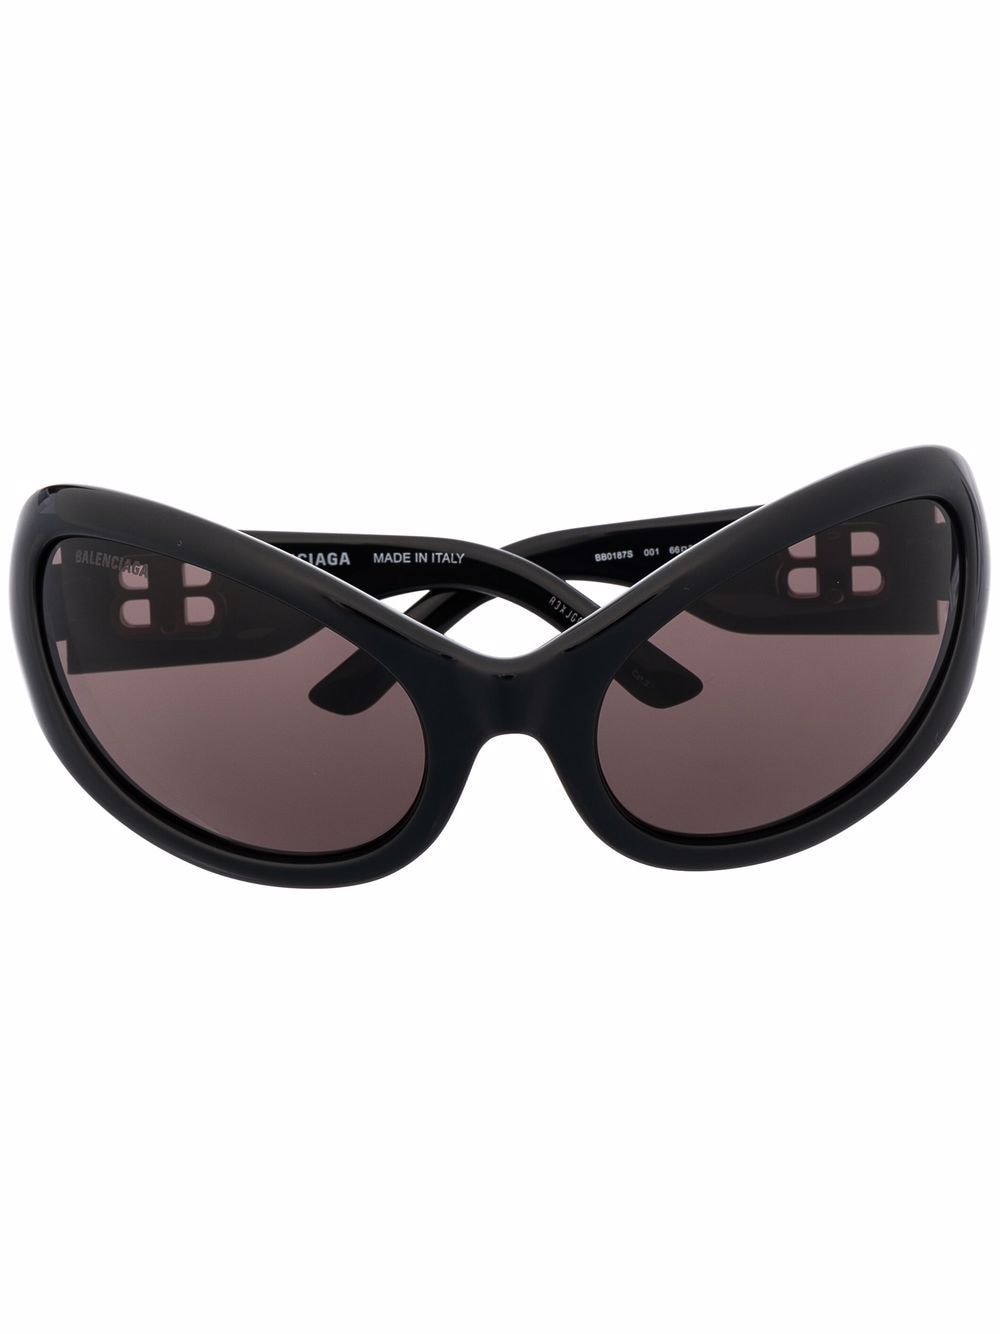 фото Balenciaga eyewear солнцезащитные очки nevermind в оправе 'кошачий глаз'